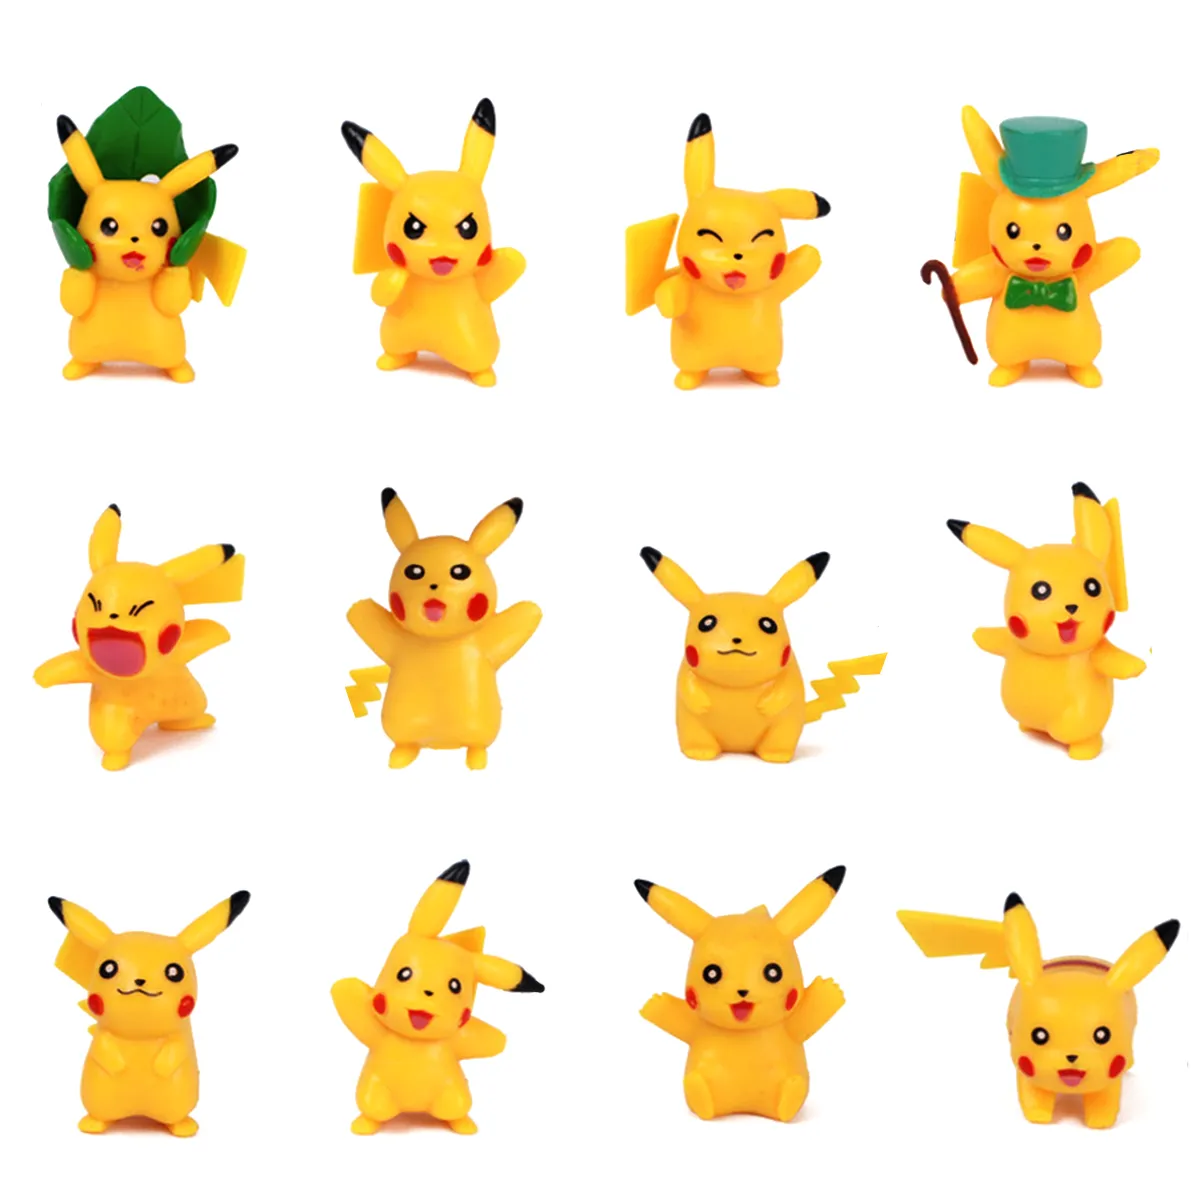 HCM]Mô hình Pokemon 12 Pikachu vui vẻ trang trí sinh nhật | Lazada.vn